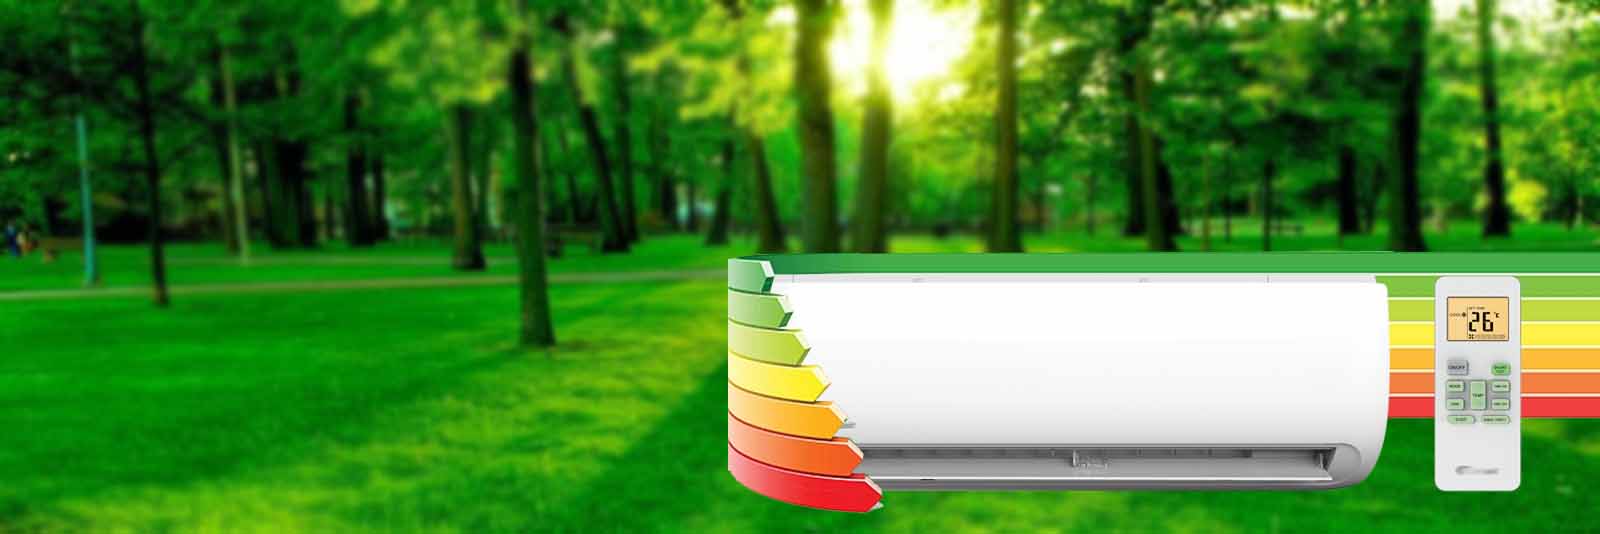 Показатели энергоэффективности кондиционеров и тепловых насосов